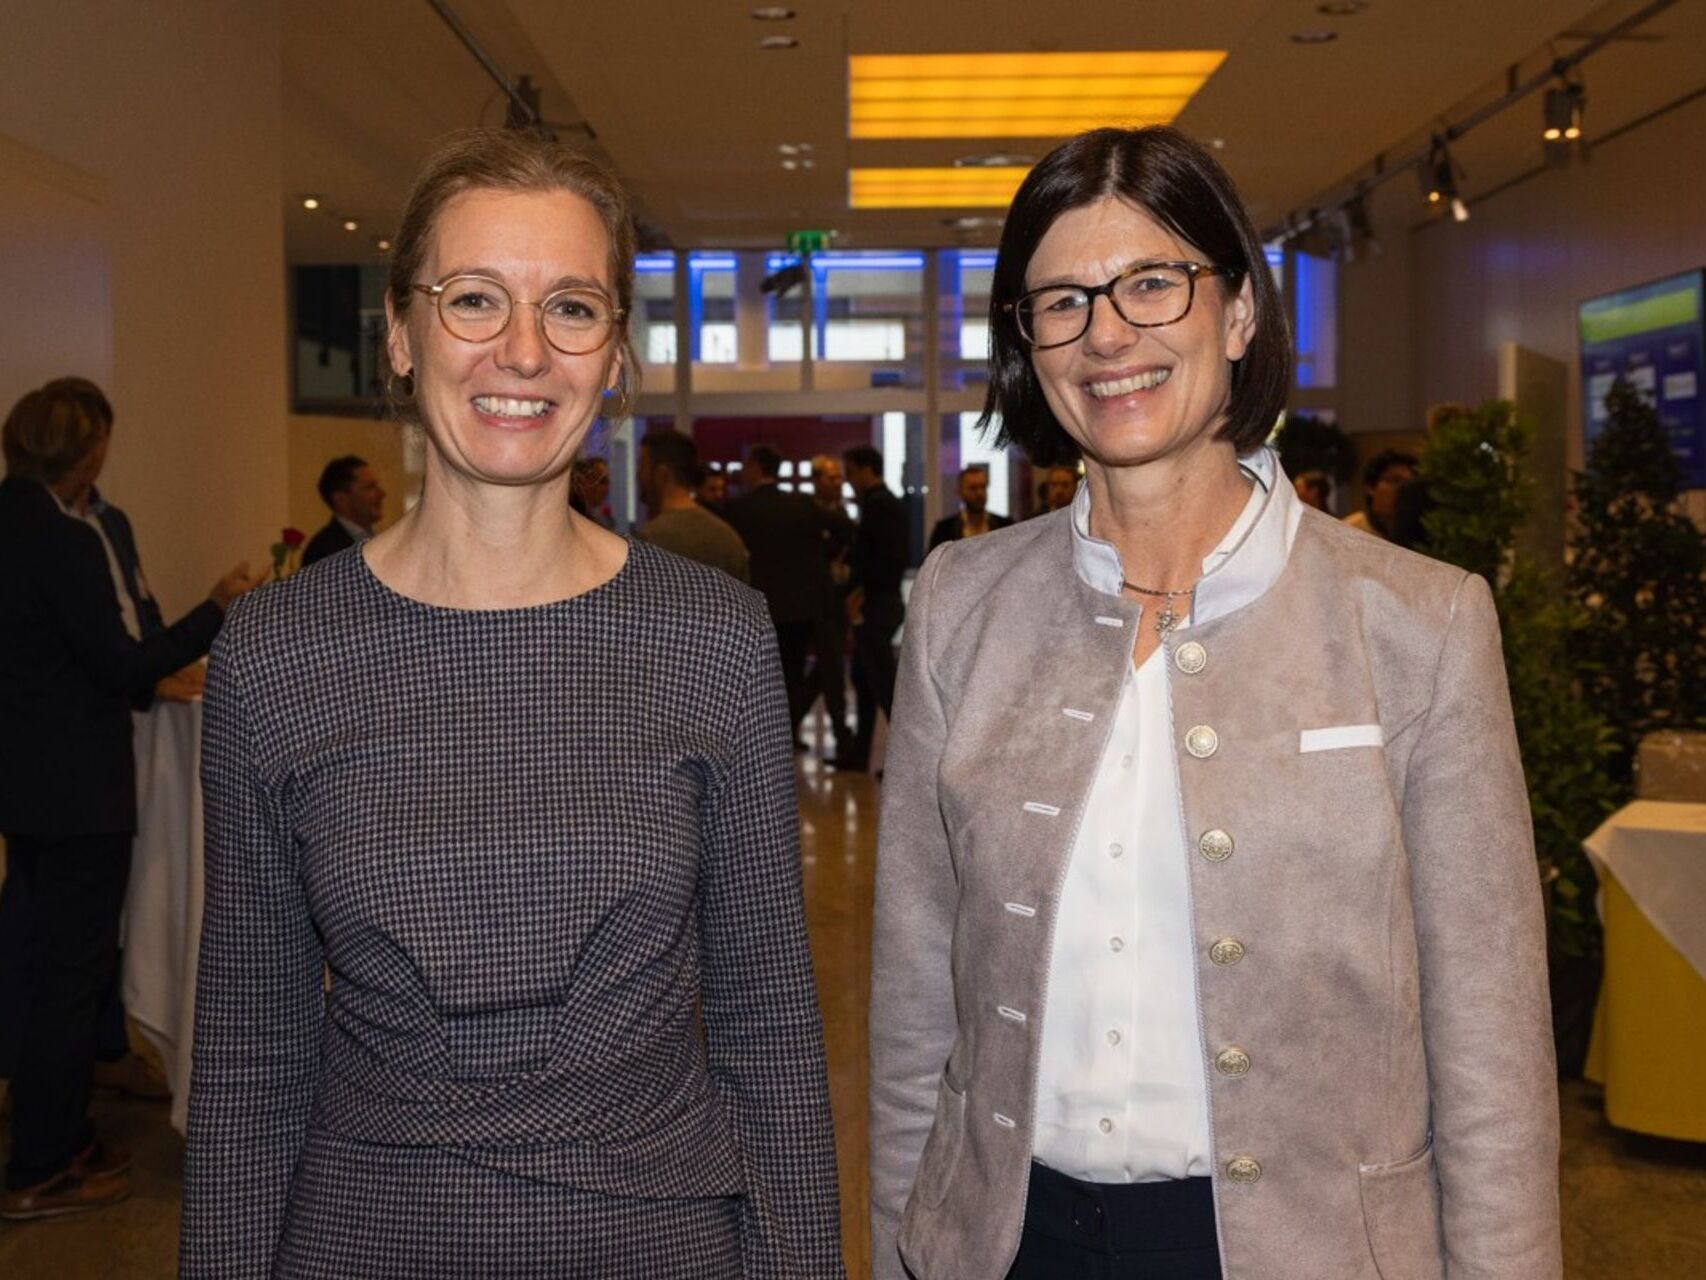 Sabine Mounani, zëvendëskryeministre dhe ministre e ekonomisë së Lihtenshtajnit dhe Catrin Hinkel, CEO e Microsoft Zvicër